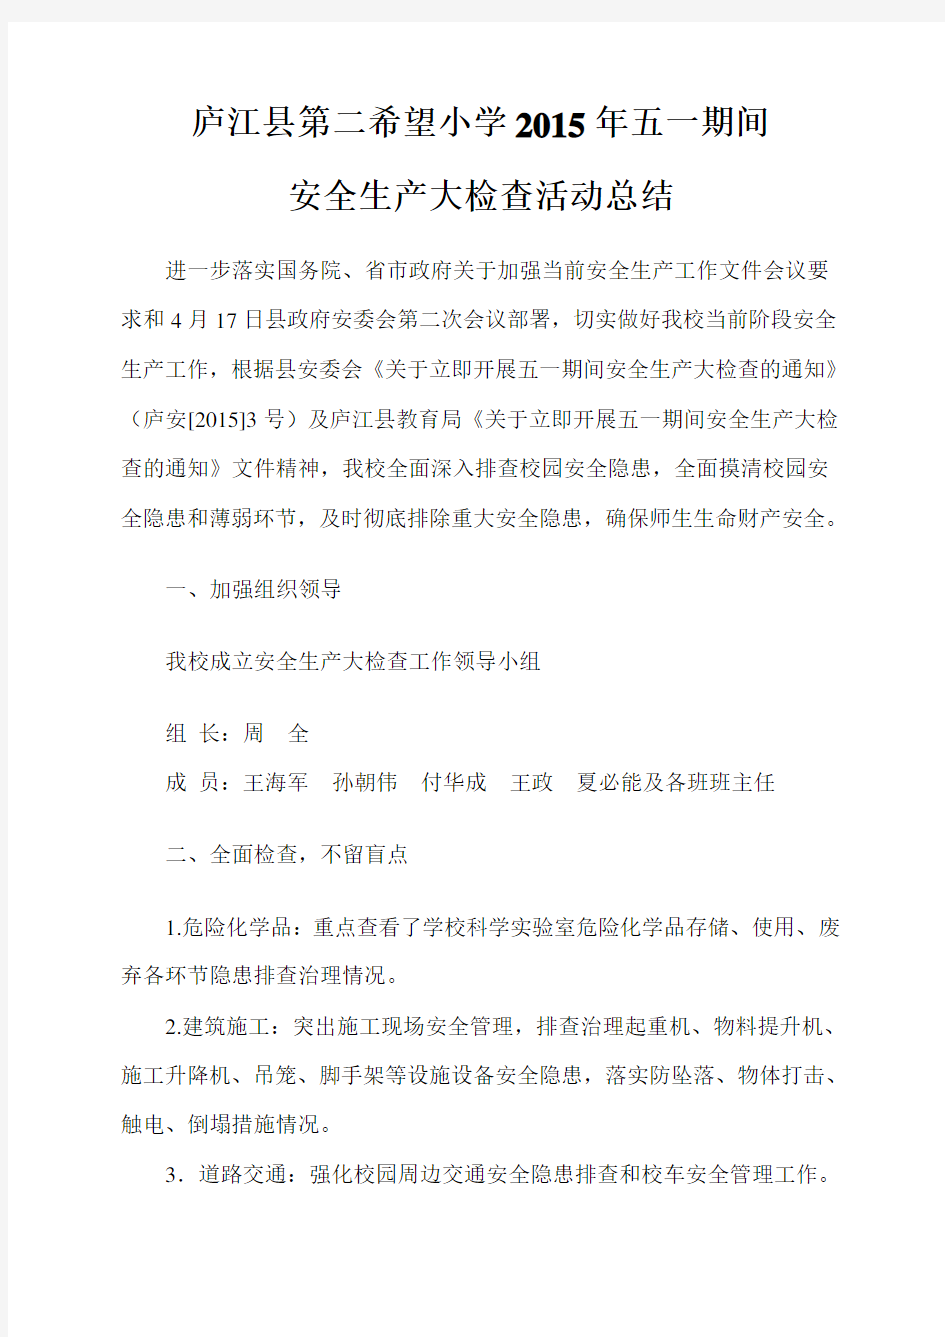 庐江县第二希望小学2015年五一期间安全生产大检查总结